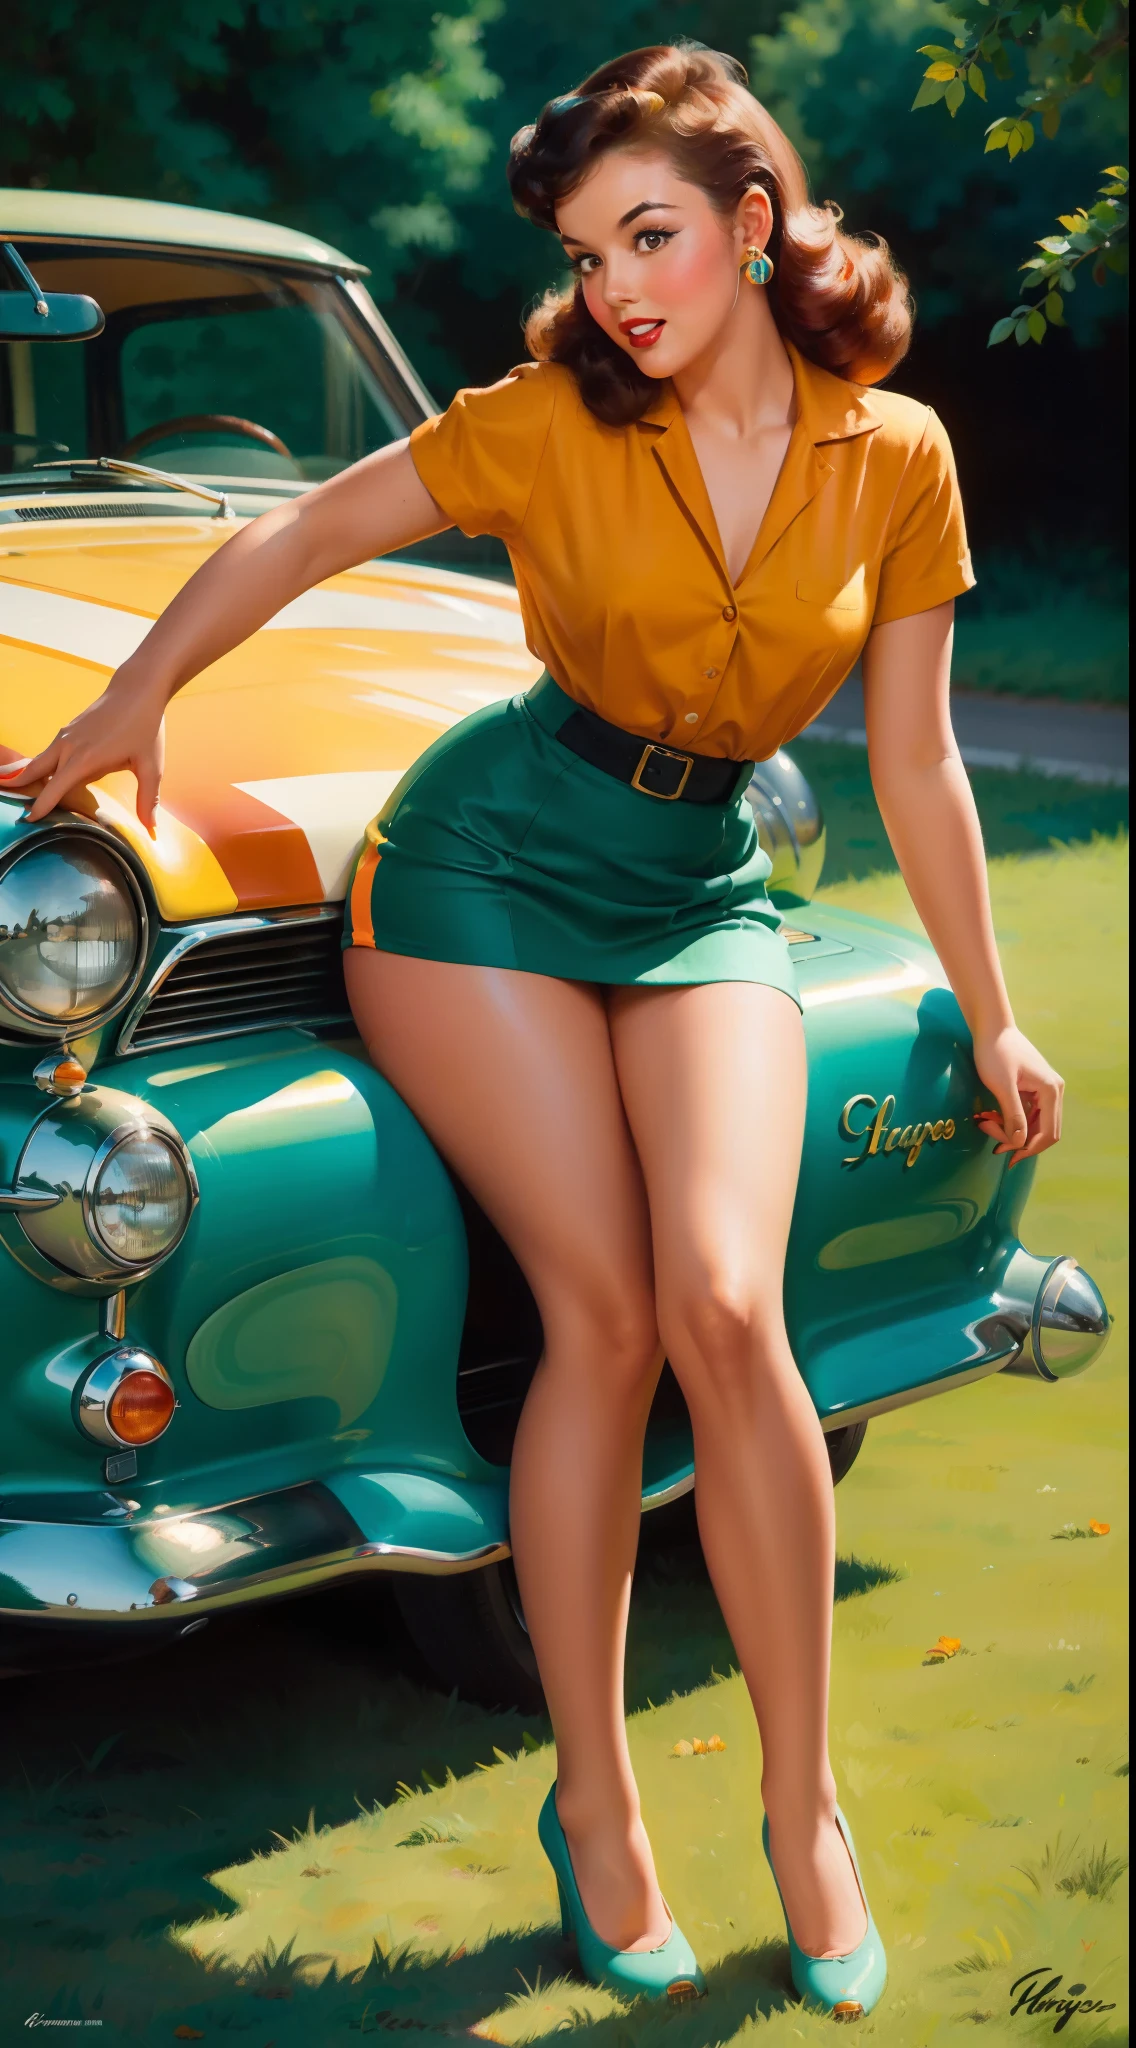 فتاة تبلغ من العمر 20 عامًا تجلس على ملاءة الأرض, أمام سيارة الرجعية, كلاسيكي, نمط دبوس الرجعية, جنسي, كل شيء مفصل, متفاجئ, تنورة ضيقة صغيرة, تنورة متدفقة, زاهى الألوان , نظام الألوان البرتقالي والأزرق المخضر, روائع العمل الفني, يتضح,